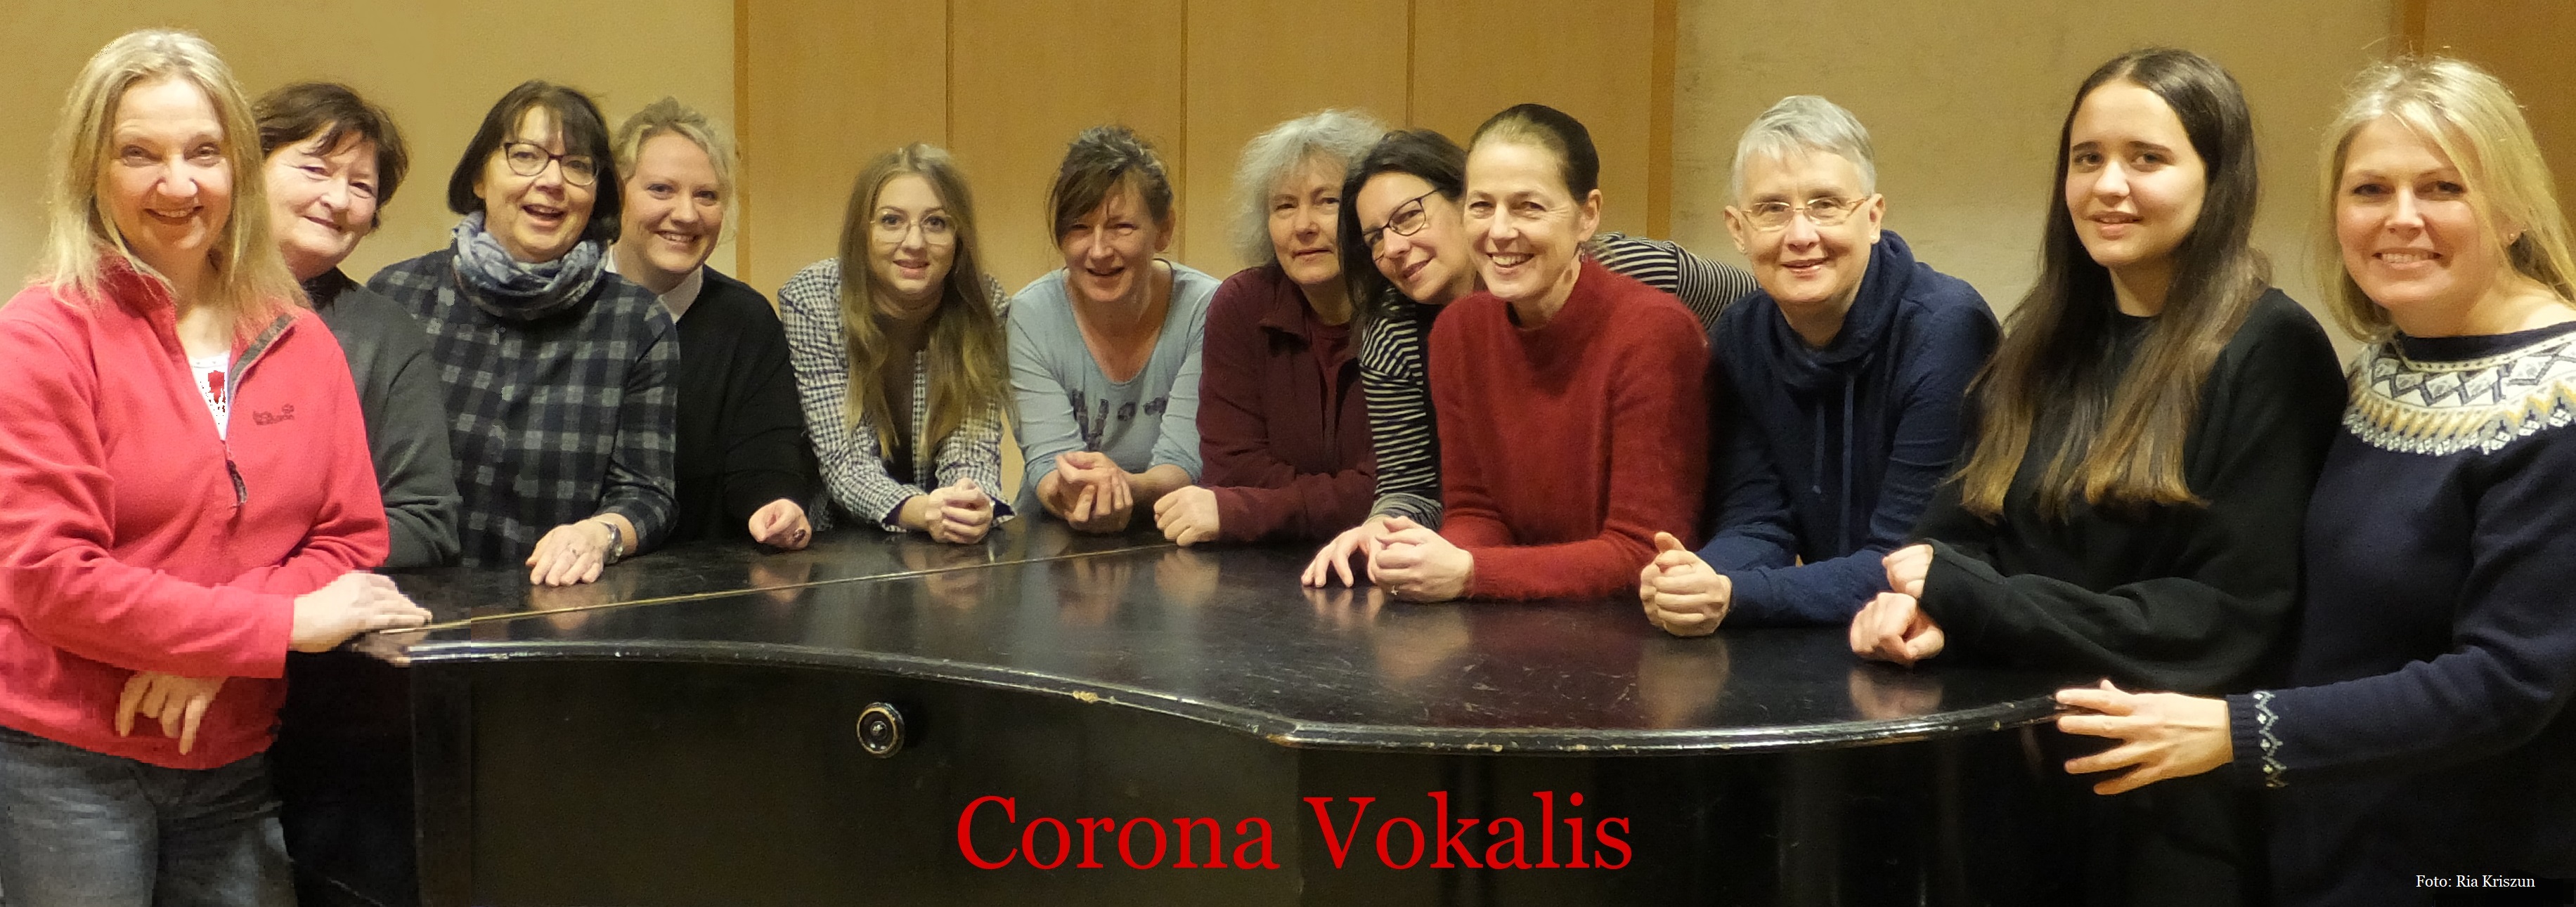 Bild vergrößern: Mitglieder des Chores Corona Vokalis der Musikschule